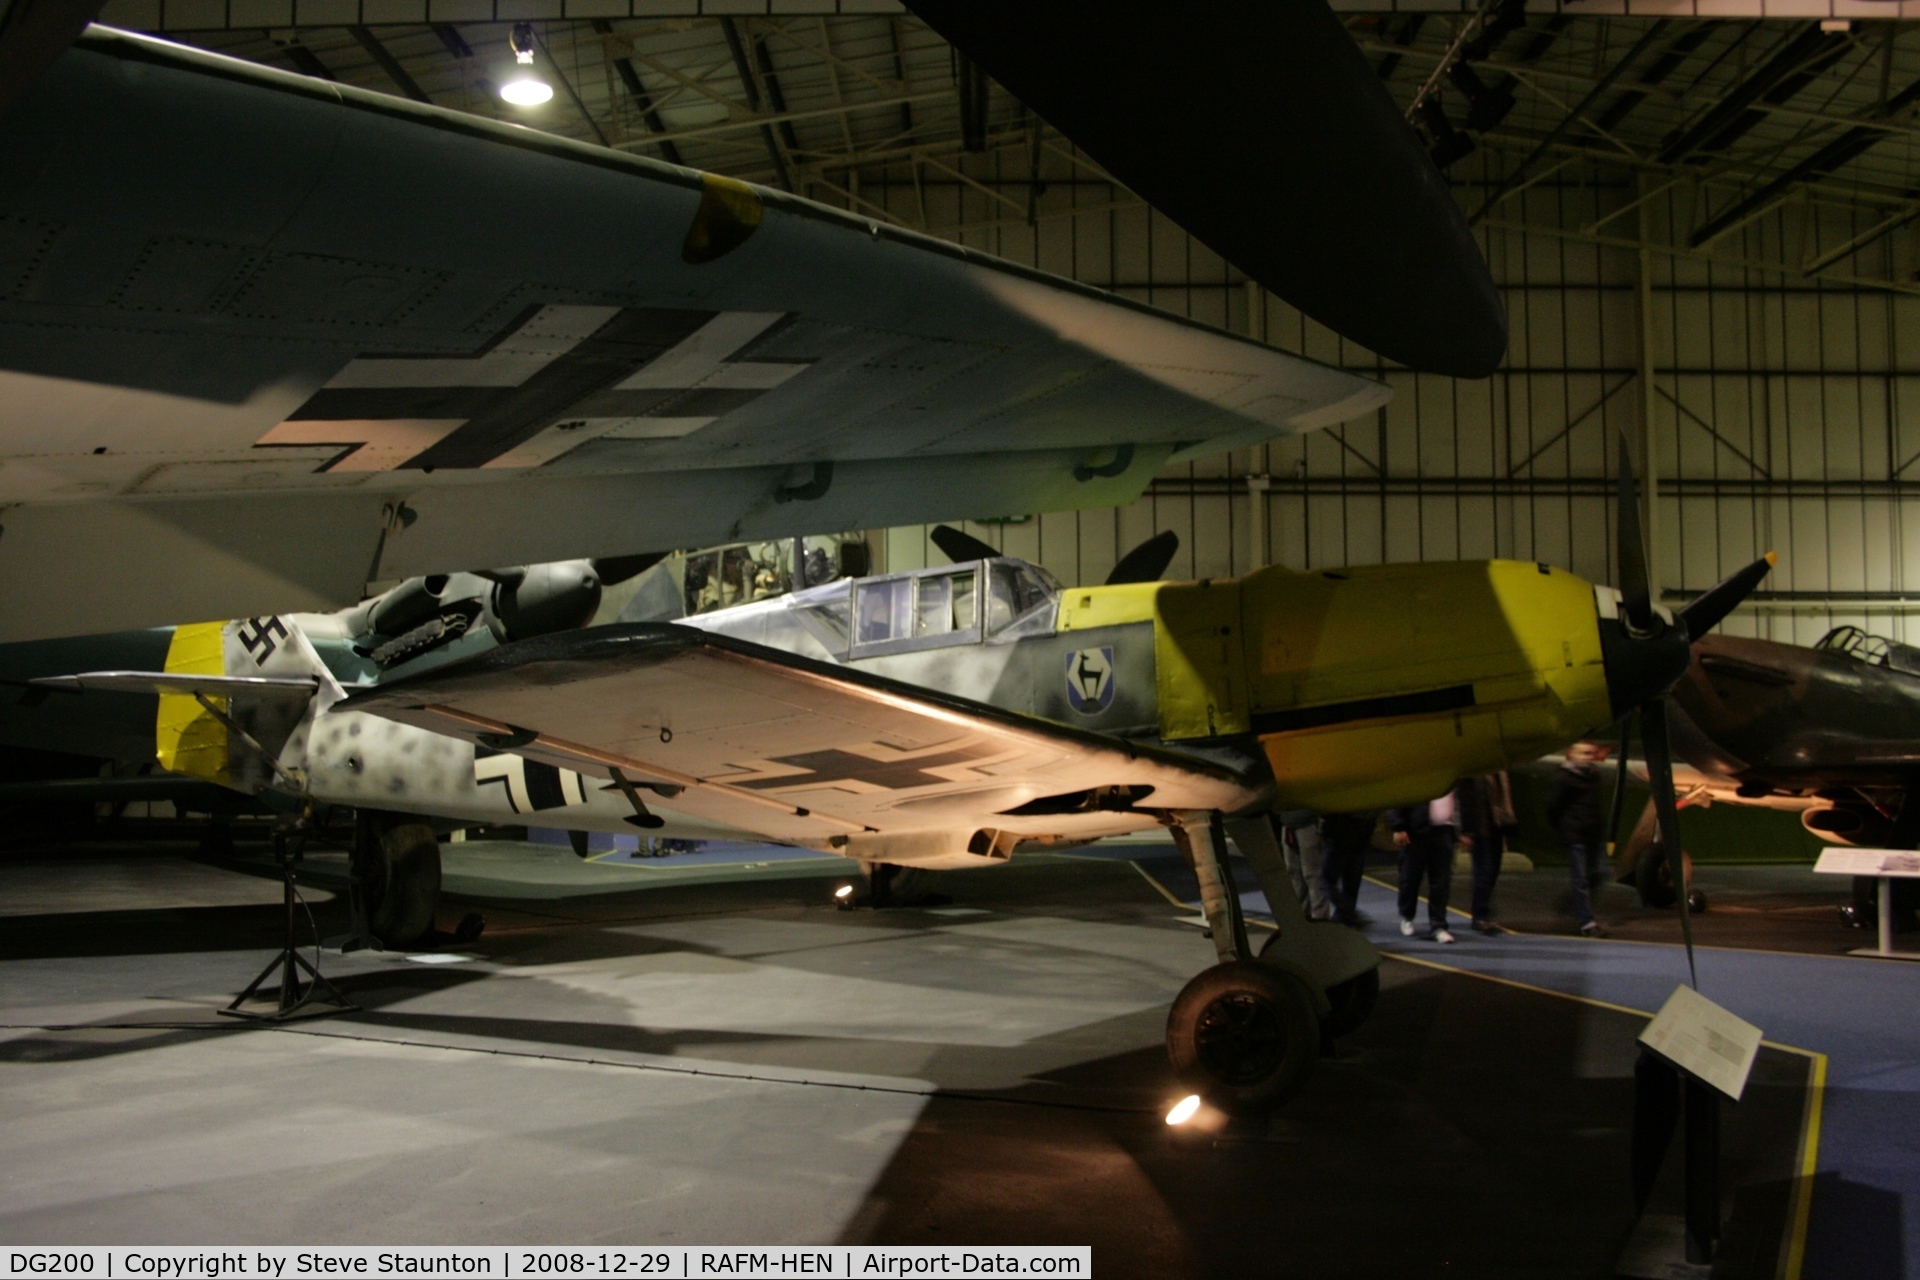 DG200, 1940 Messerschmitt Bf-109E-3/B C/N 4101, Taken at the RAF Museum, Hendon. December 2008